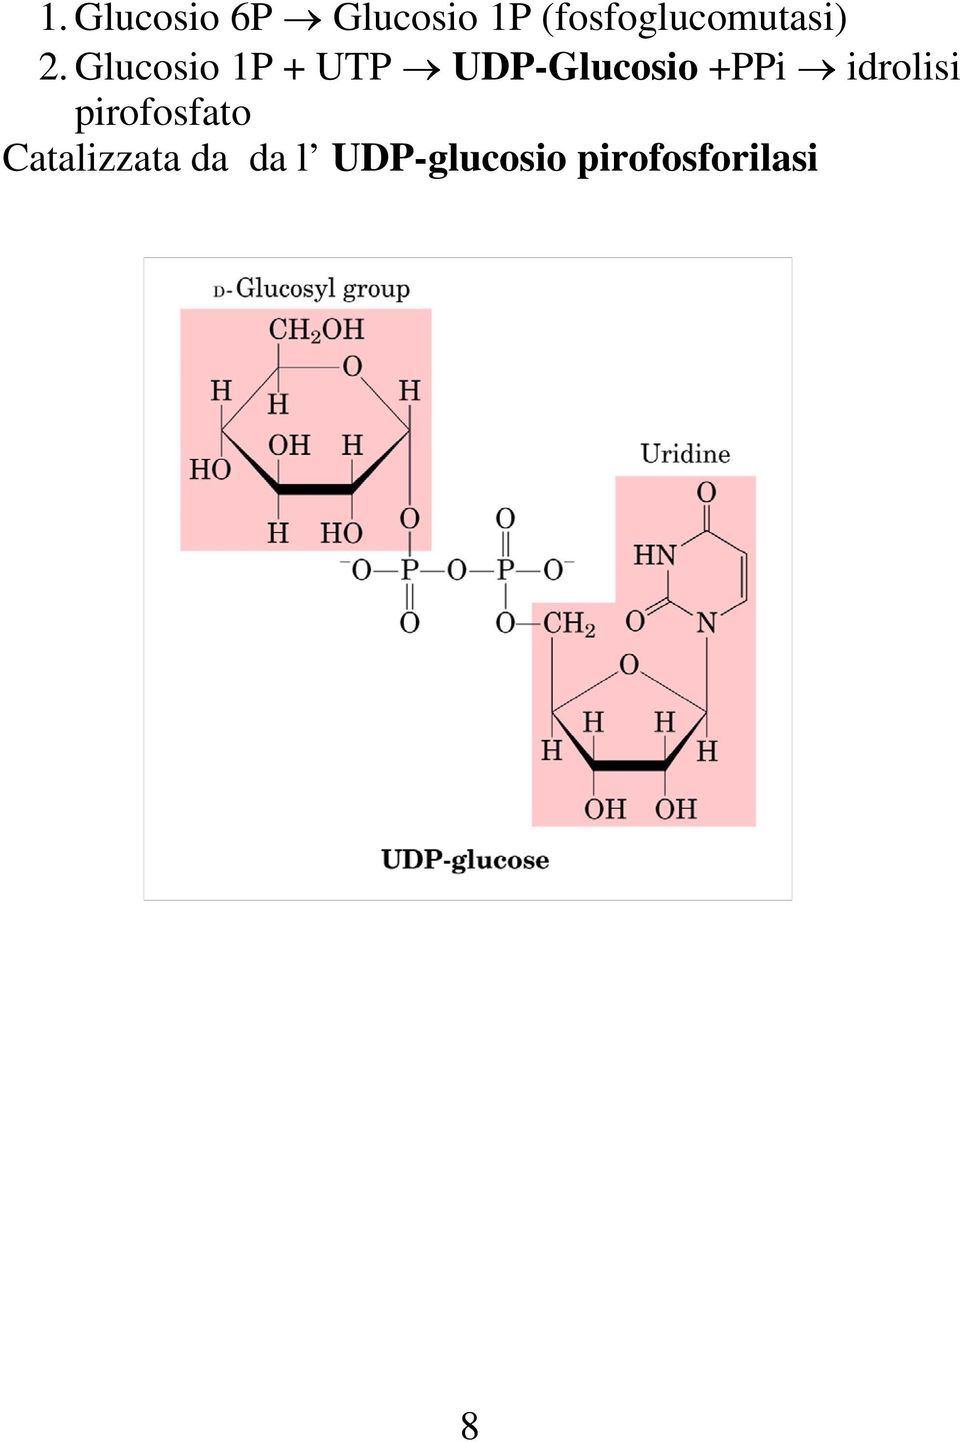 Glucosio 1P + UTP UDP-Glucosio +PPi